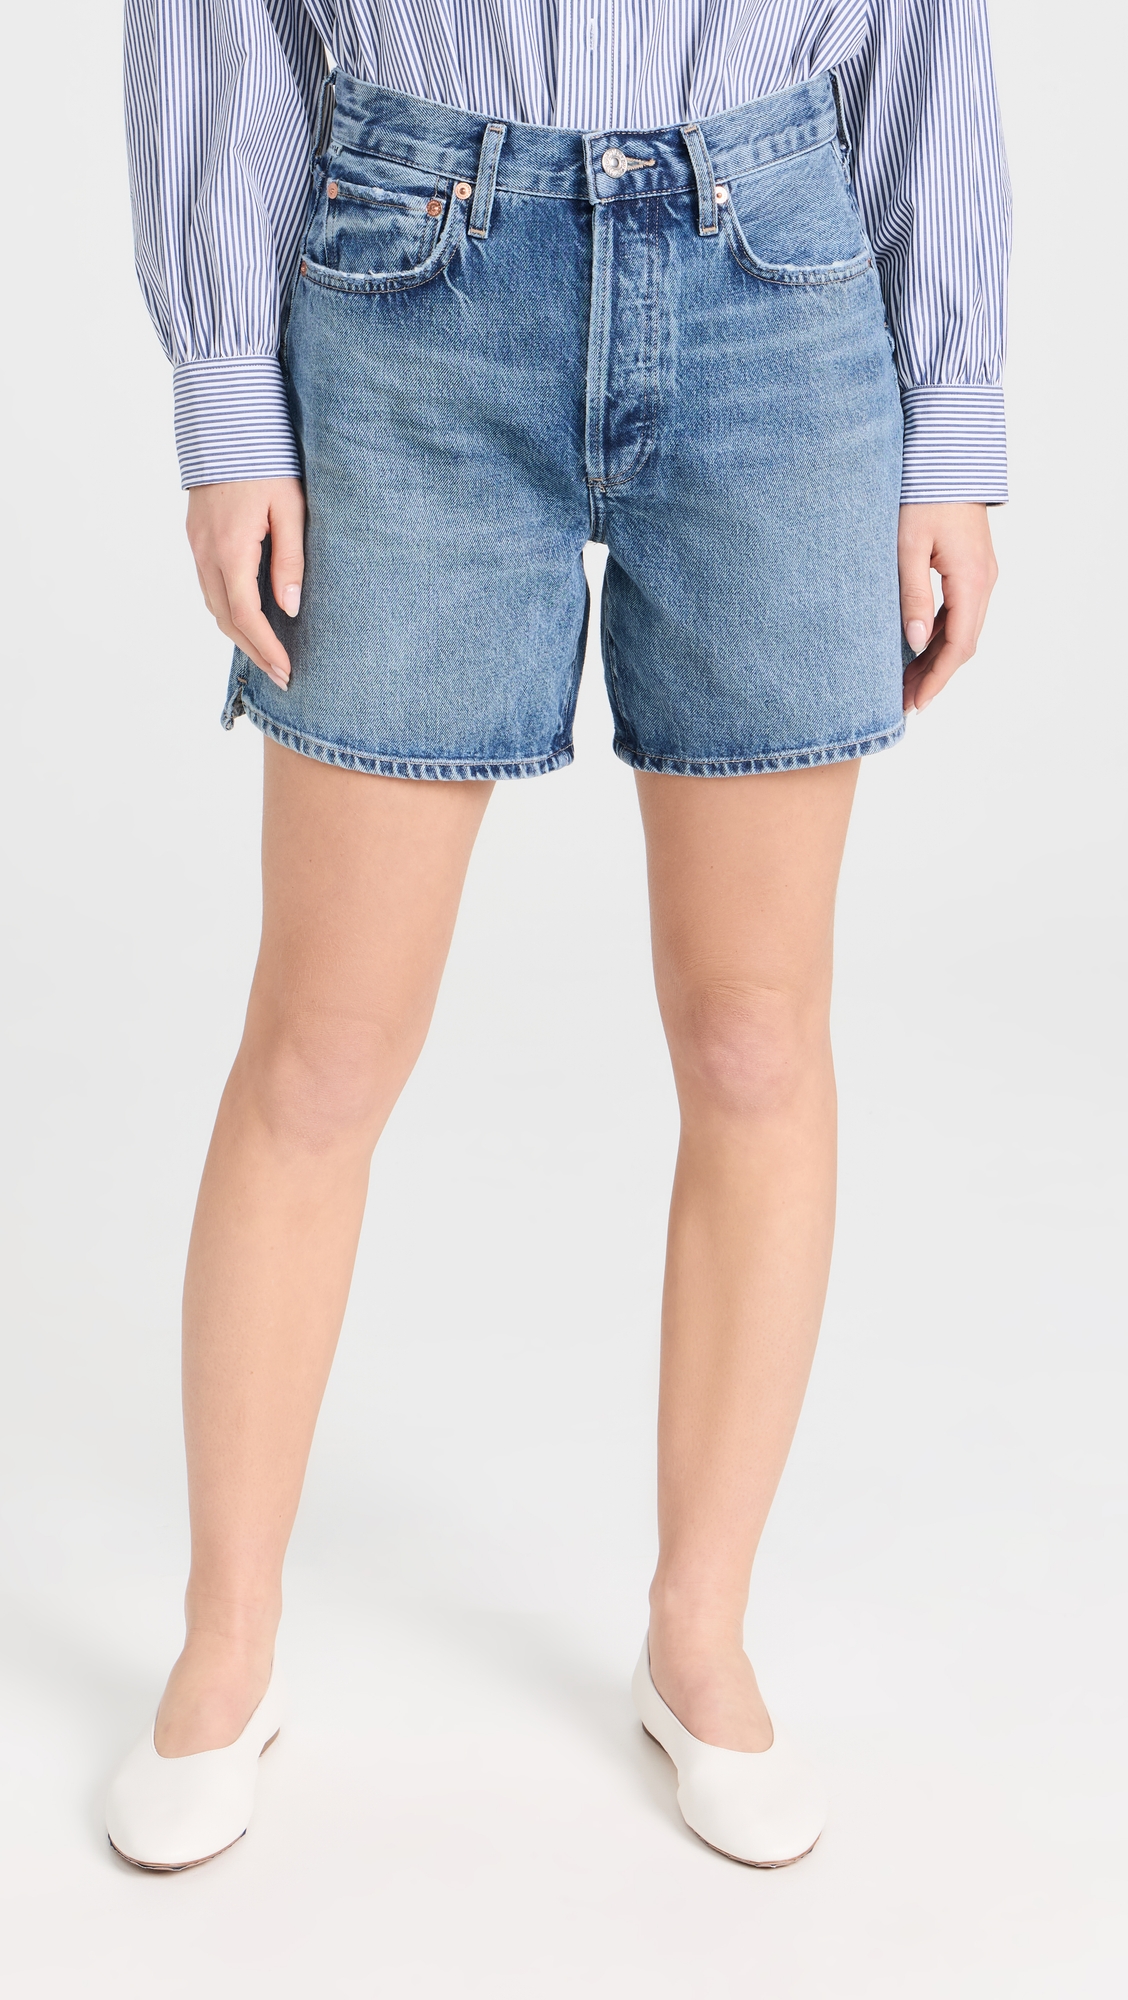 Marlow Long Vintage Shorts